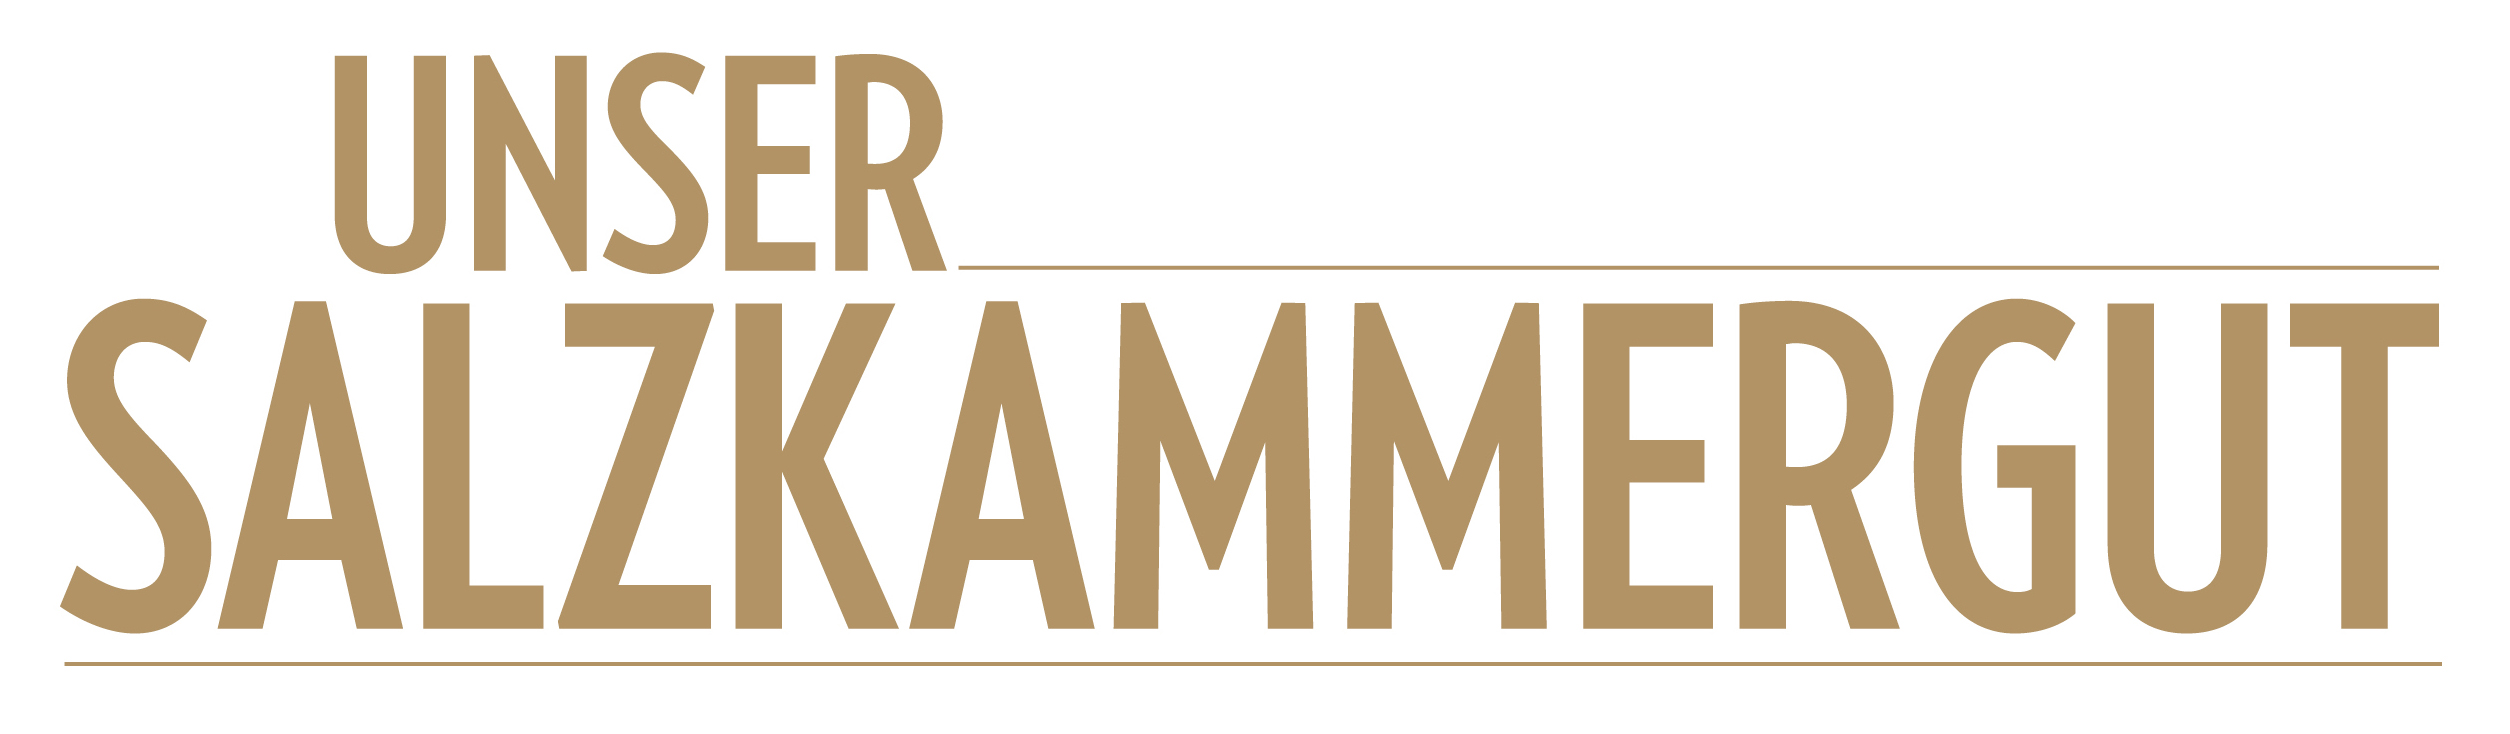 Unser Salzkammergut Logo gold